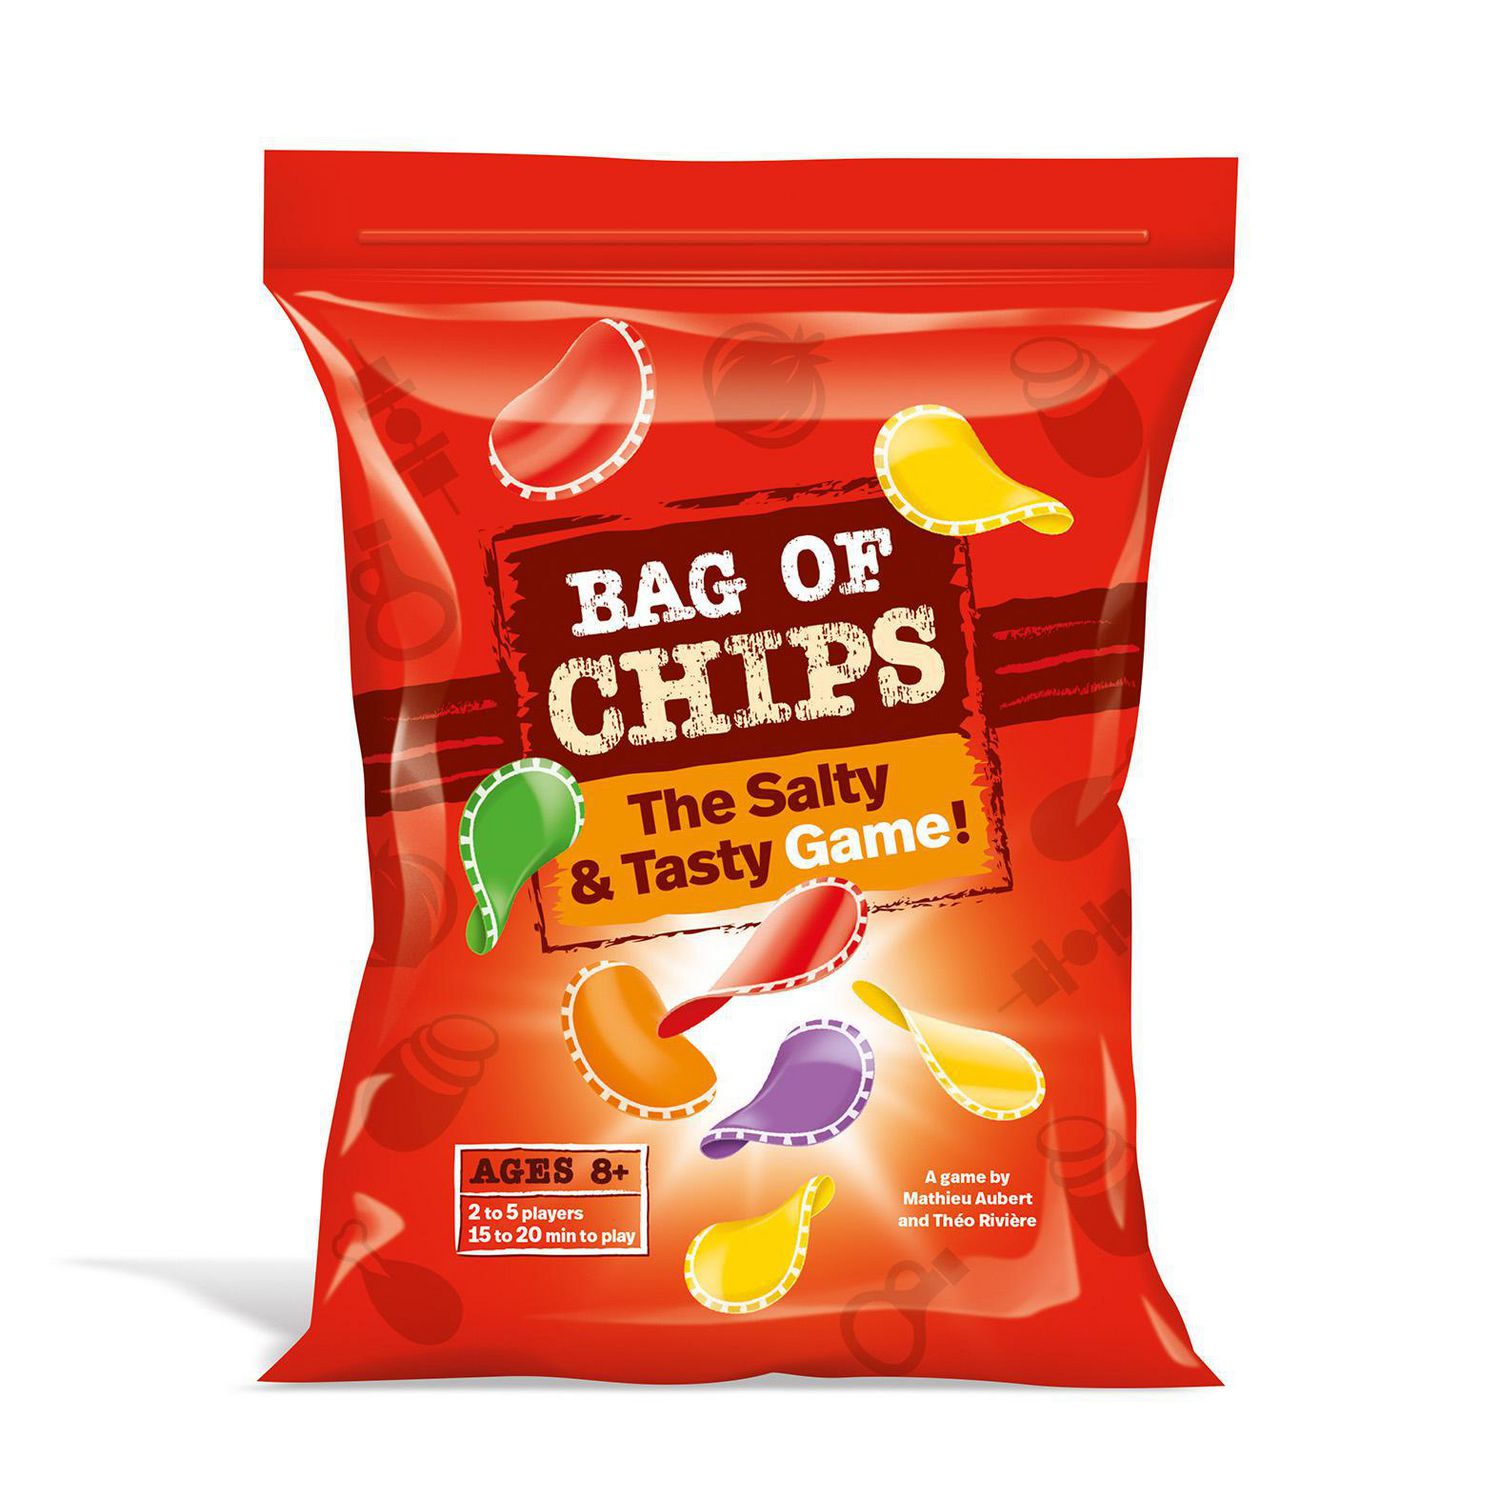 Acheter Paquet de Chips - Mixlore - Jeux de société